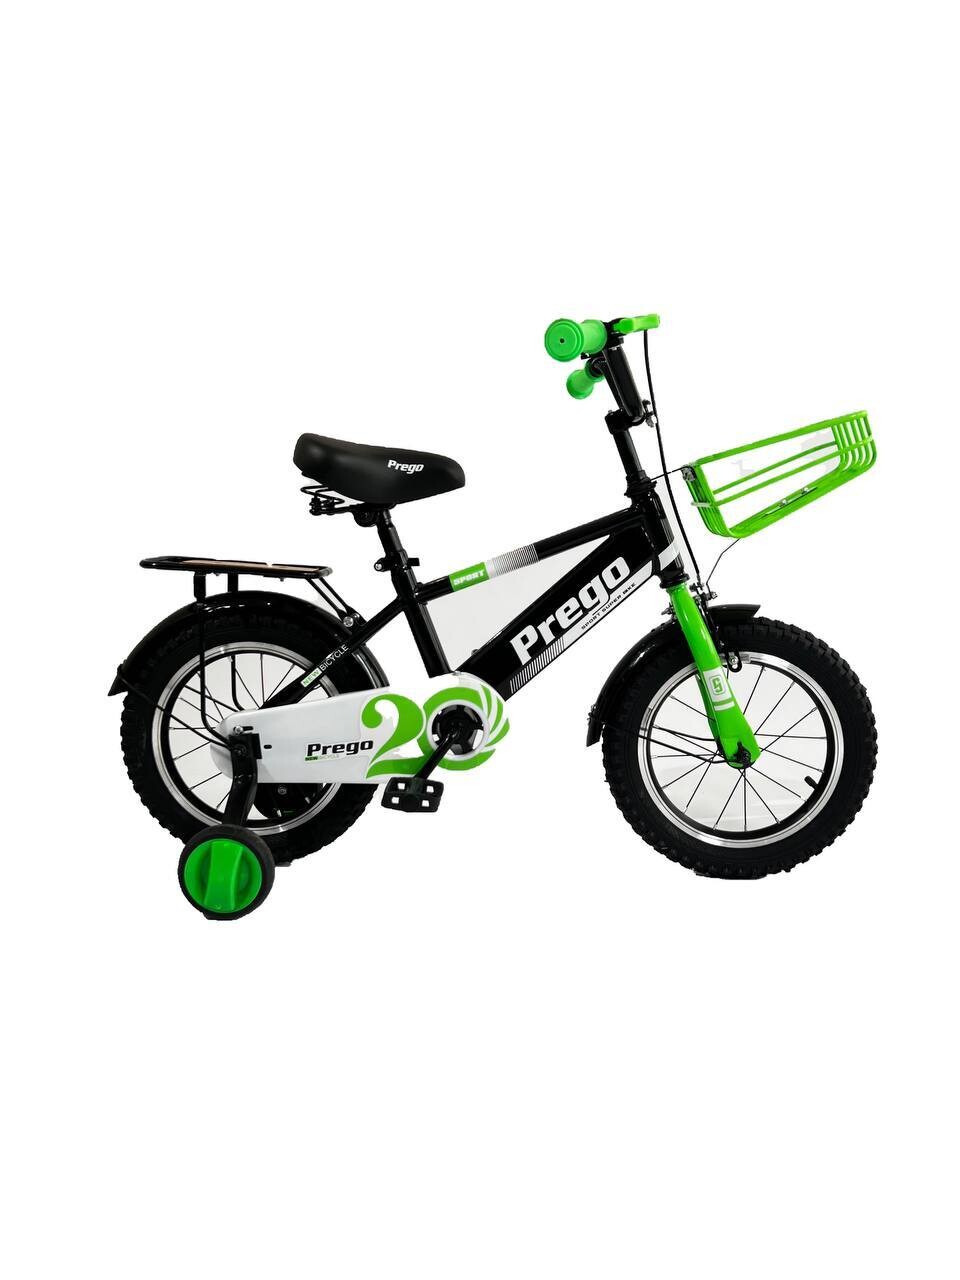 Двухколесный велосипед Prego 14D зеленый